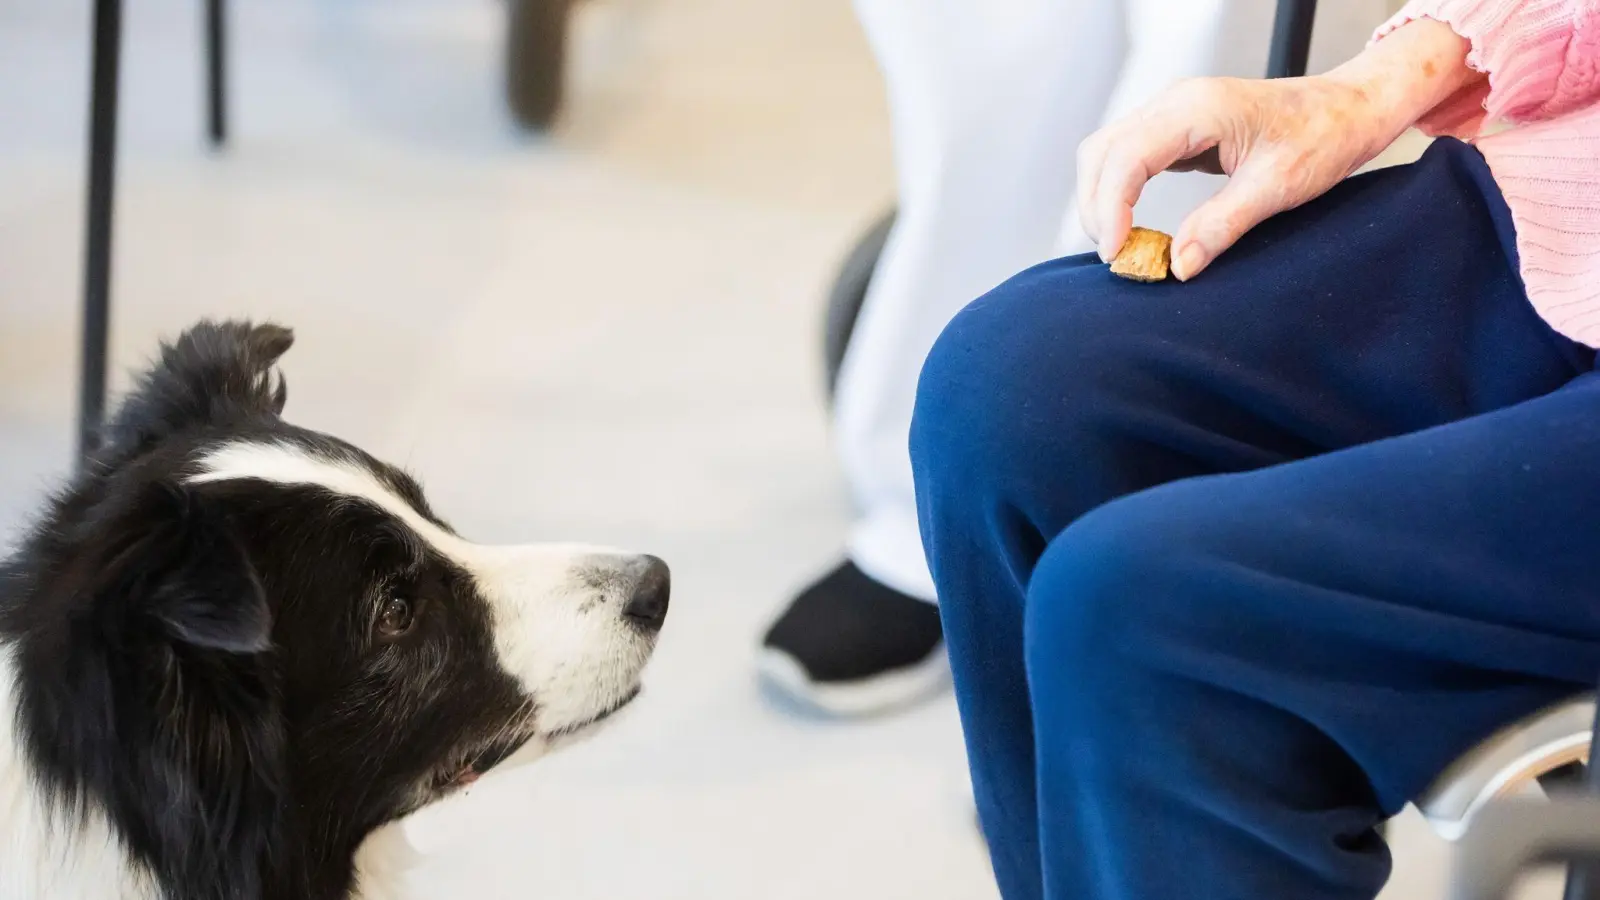 Aufmerksamer Begleiter: Wird ein Hund als Therapie- oder Assistenztier eingesetzt, können die anfallenden Kosten von der Steuer abgesetzt werden. (Foto: Christoph Soeder/dpa/dpa-tmn)